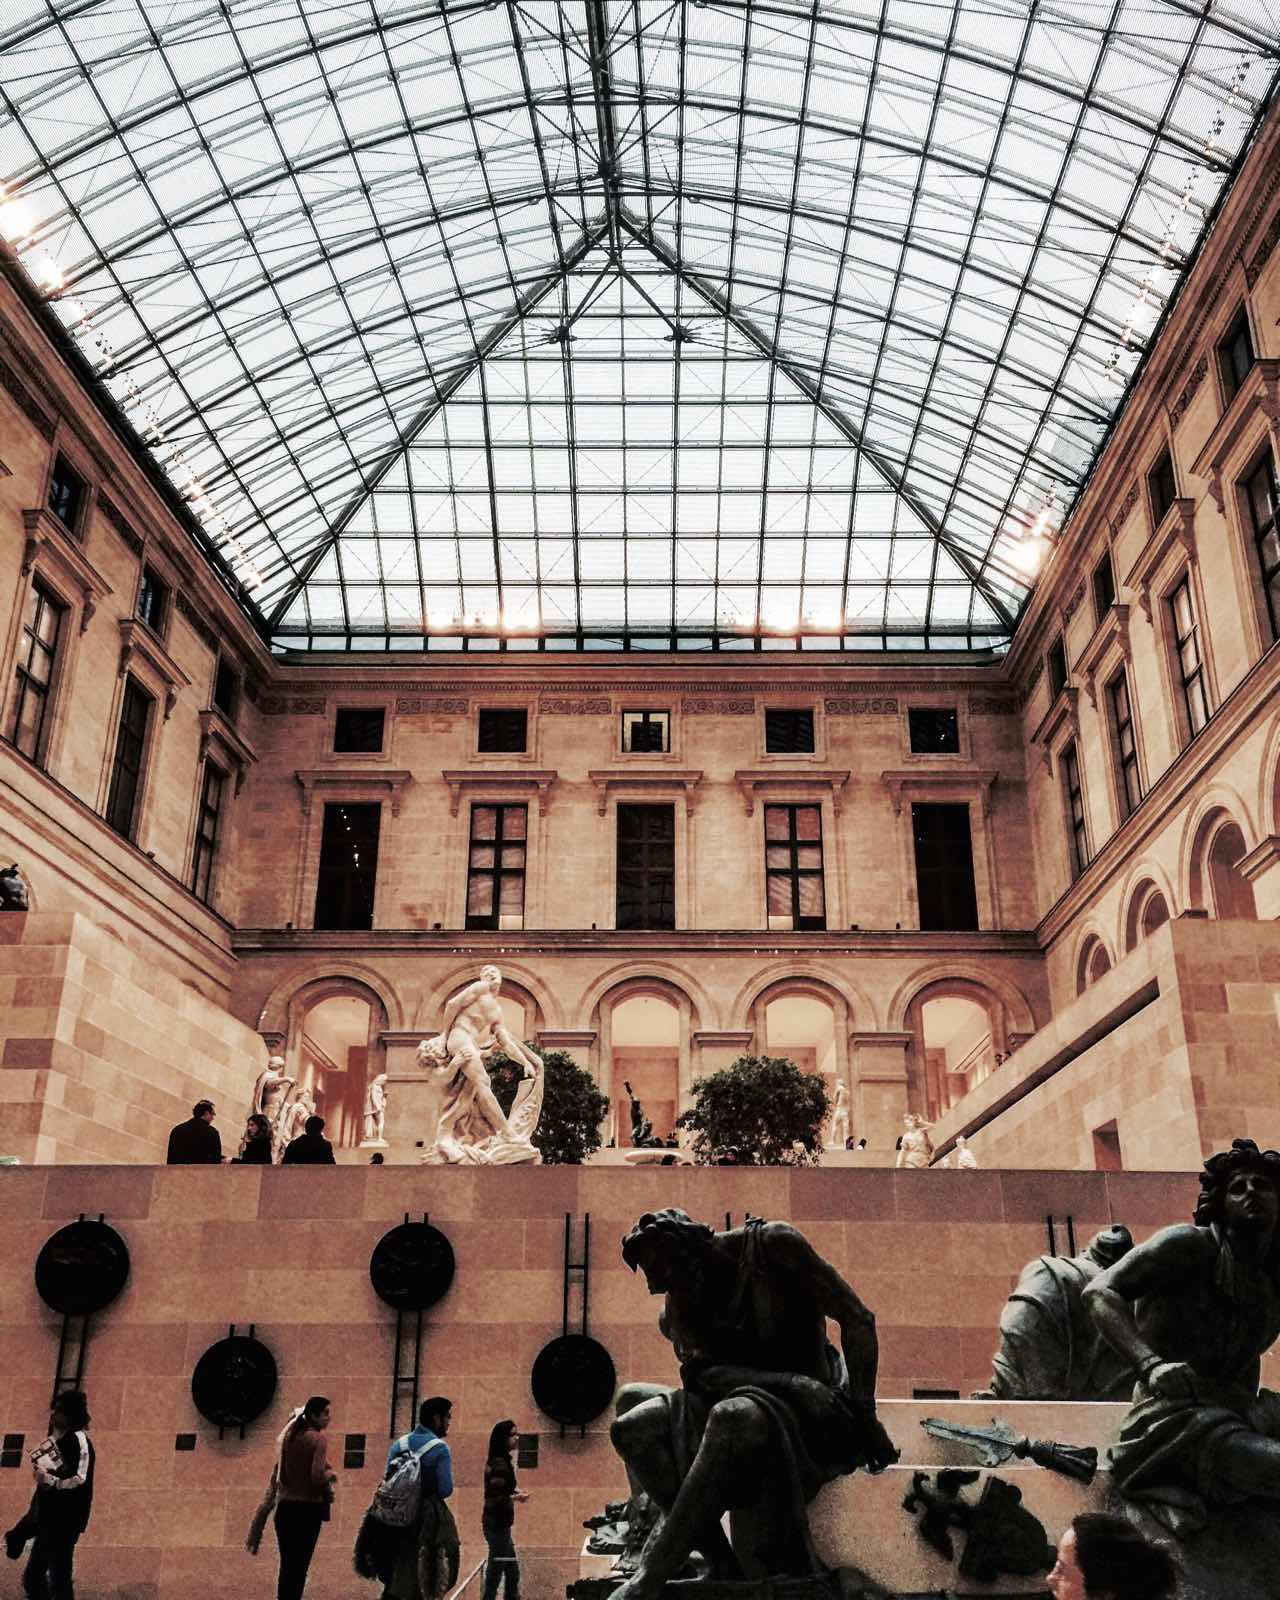 卢浮宫内不止有蒙娜丽莎，全世界最大的博物馆 - 25万件物品 展出的作